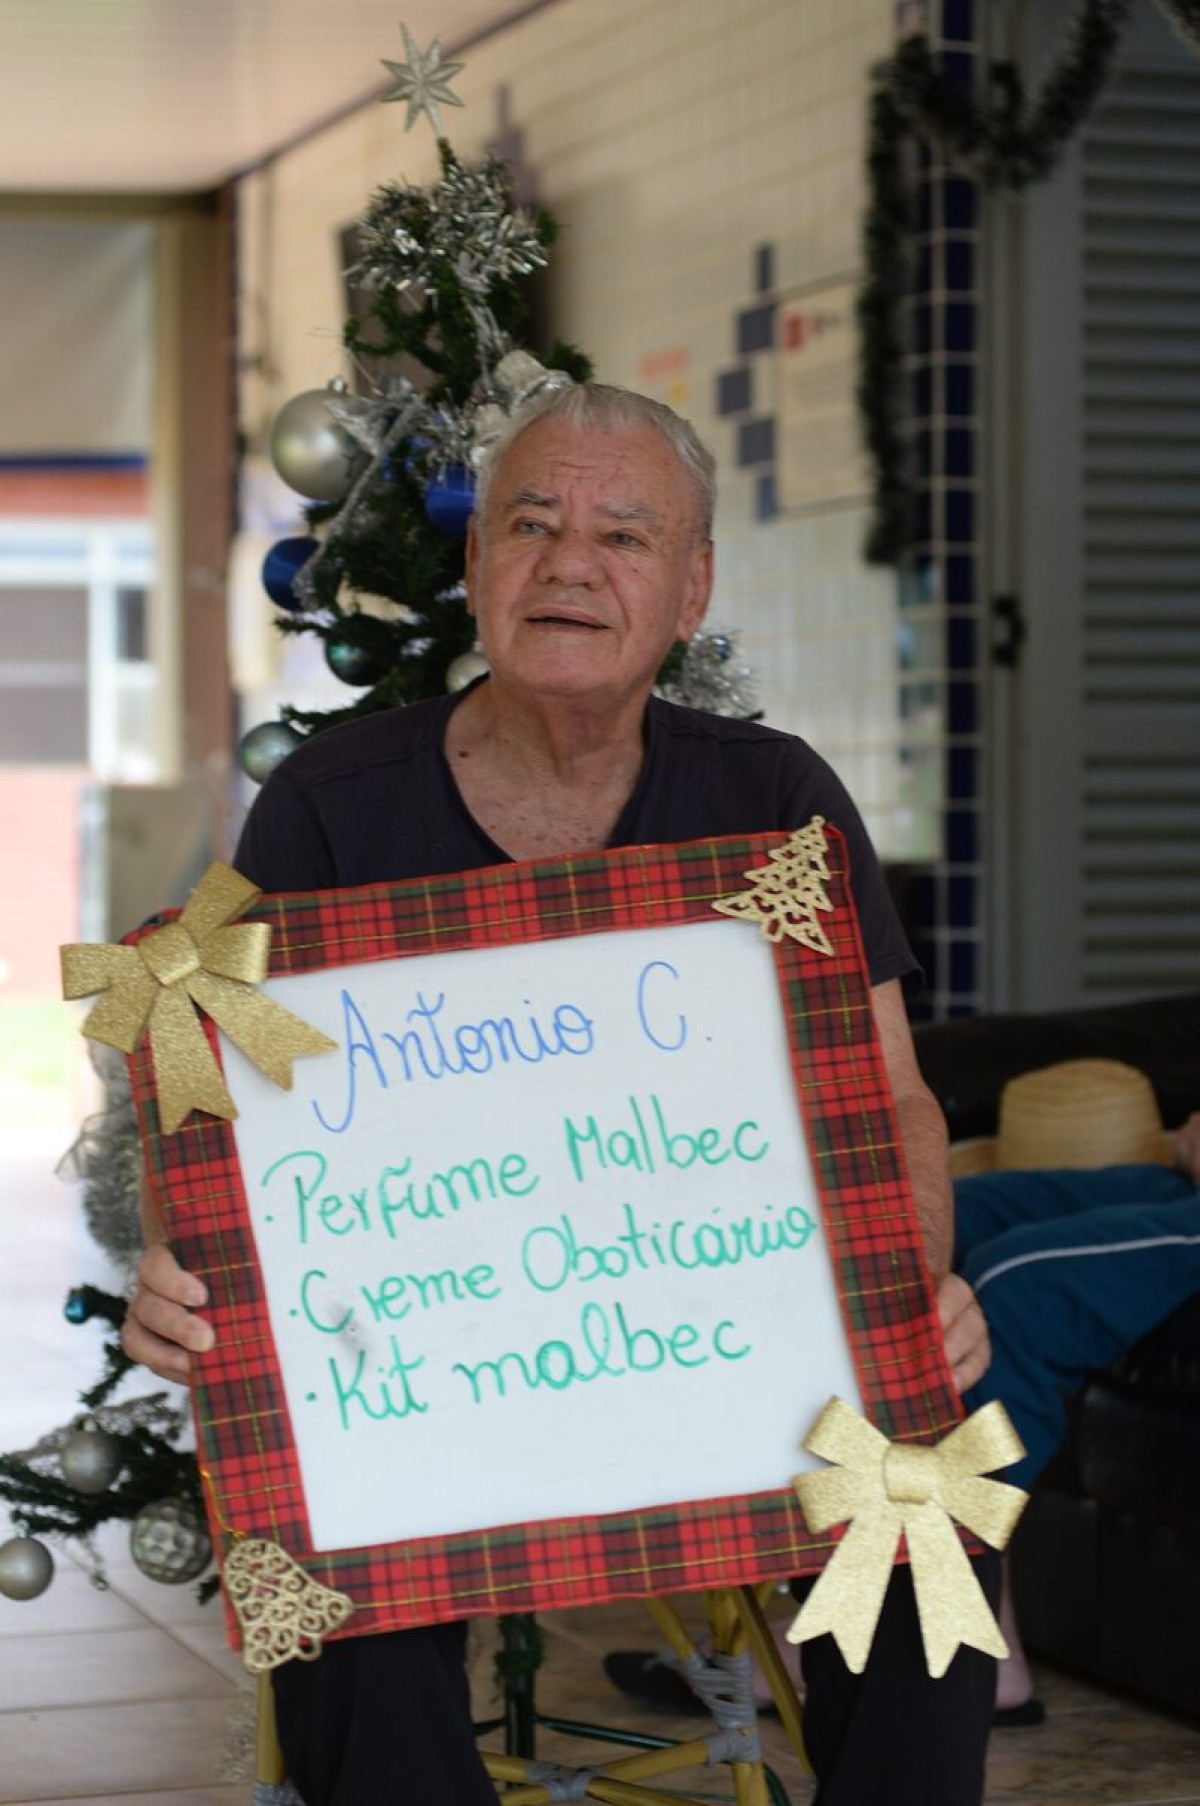 Antônio Carlos Maluf de Souza, 82, do Lar dos Velhinhos Maria de Madalena, quer ganhar perfume Malbec, creme de O Boticário ou um kit Malbec